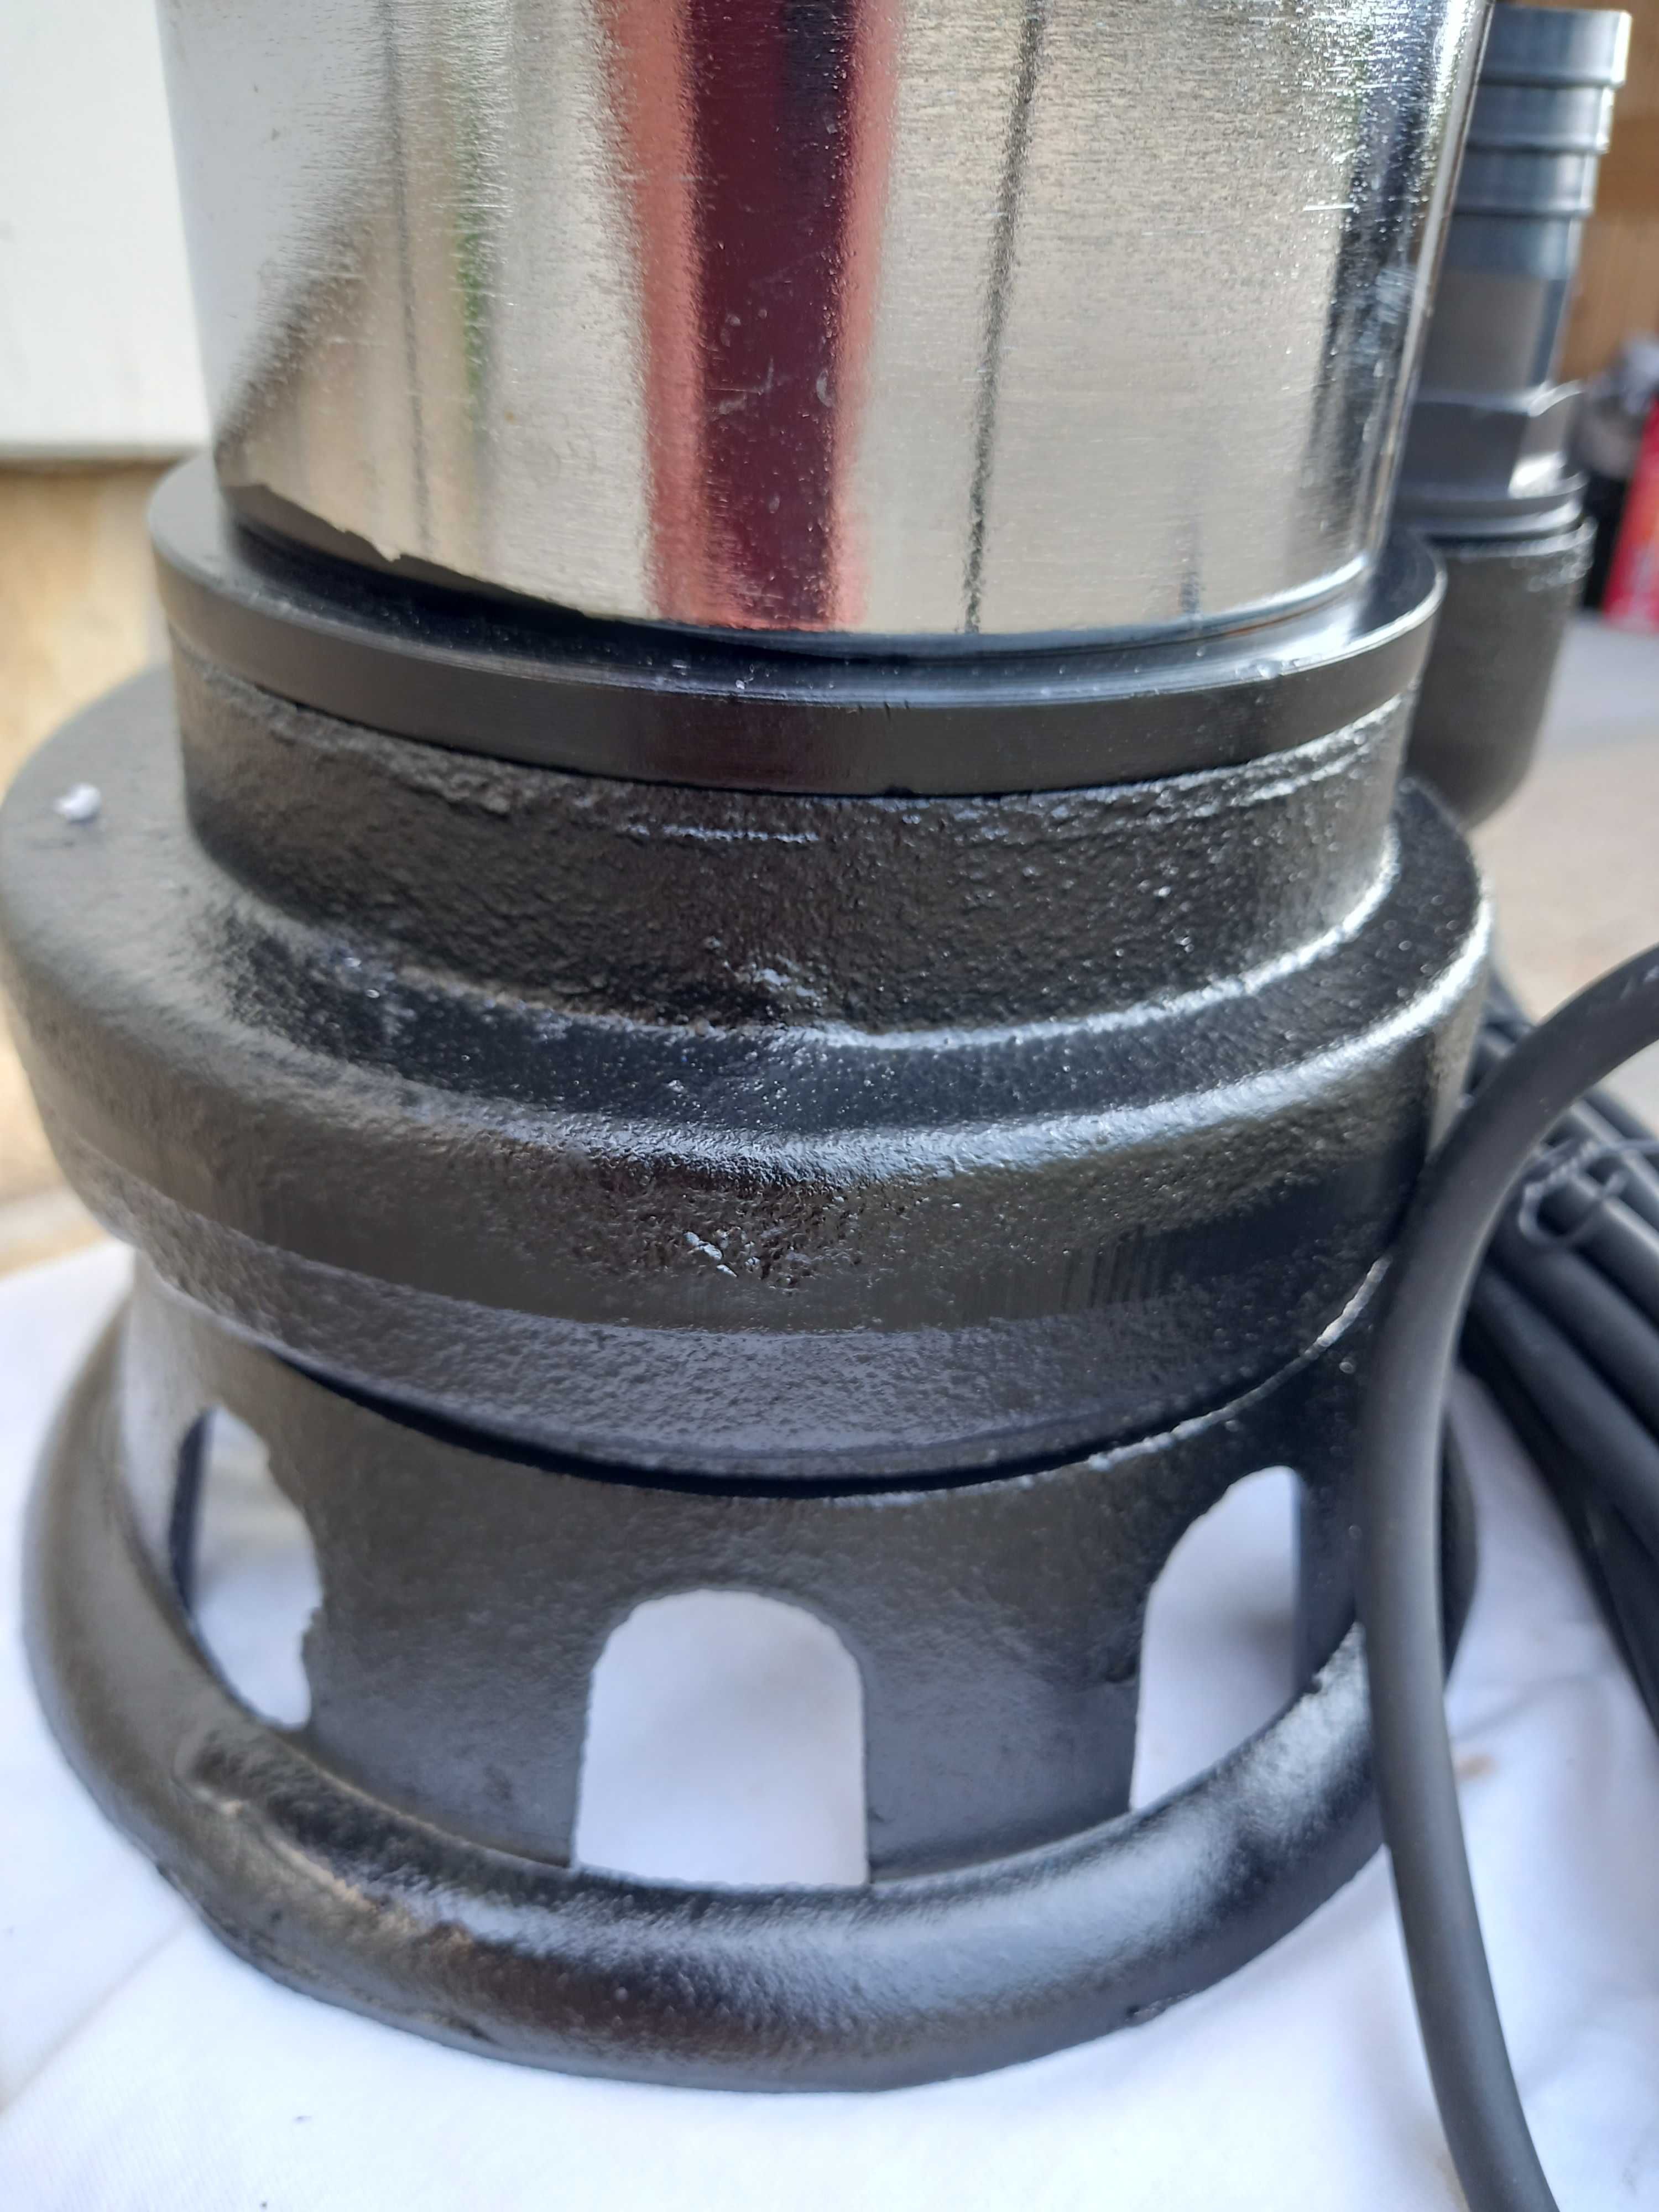 Pompa do szamba brudnej wody z rozdrabniaczem   model ALWP 50 - 2800 W